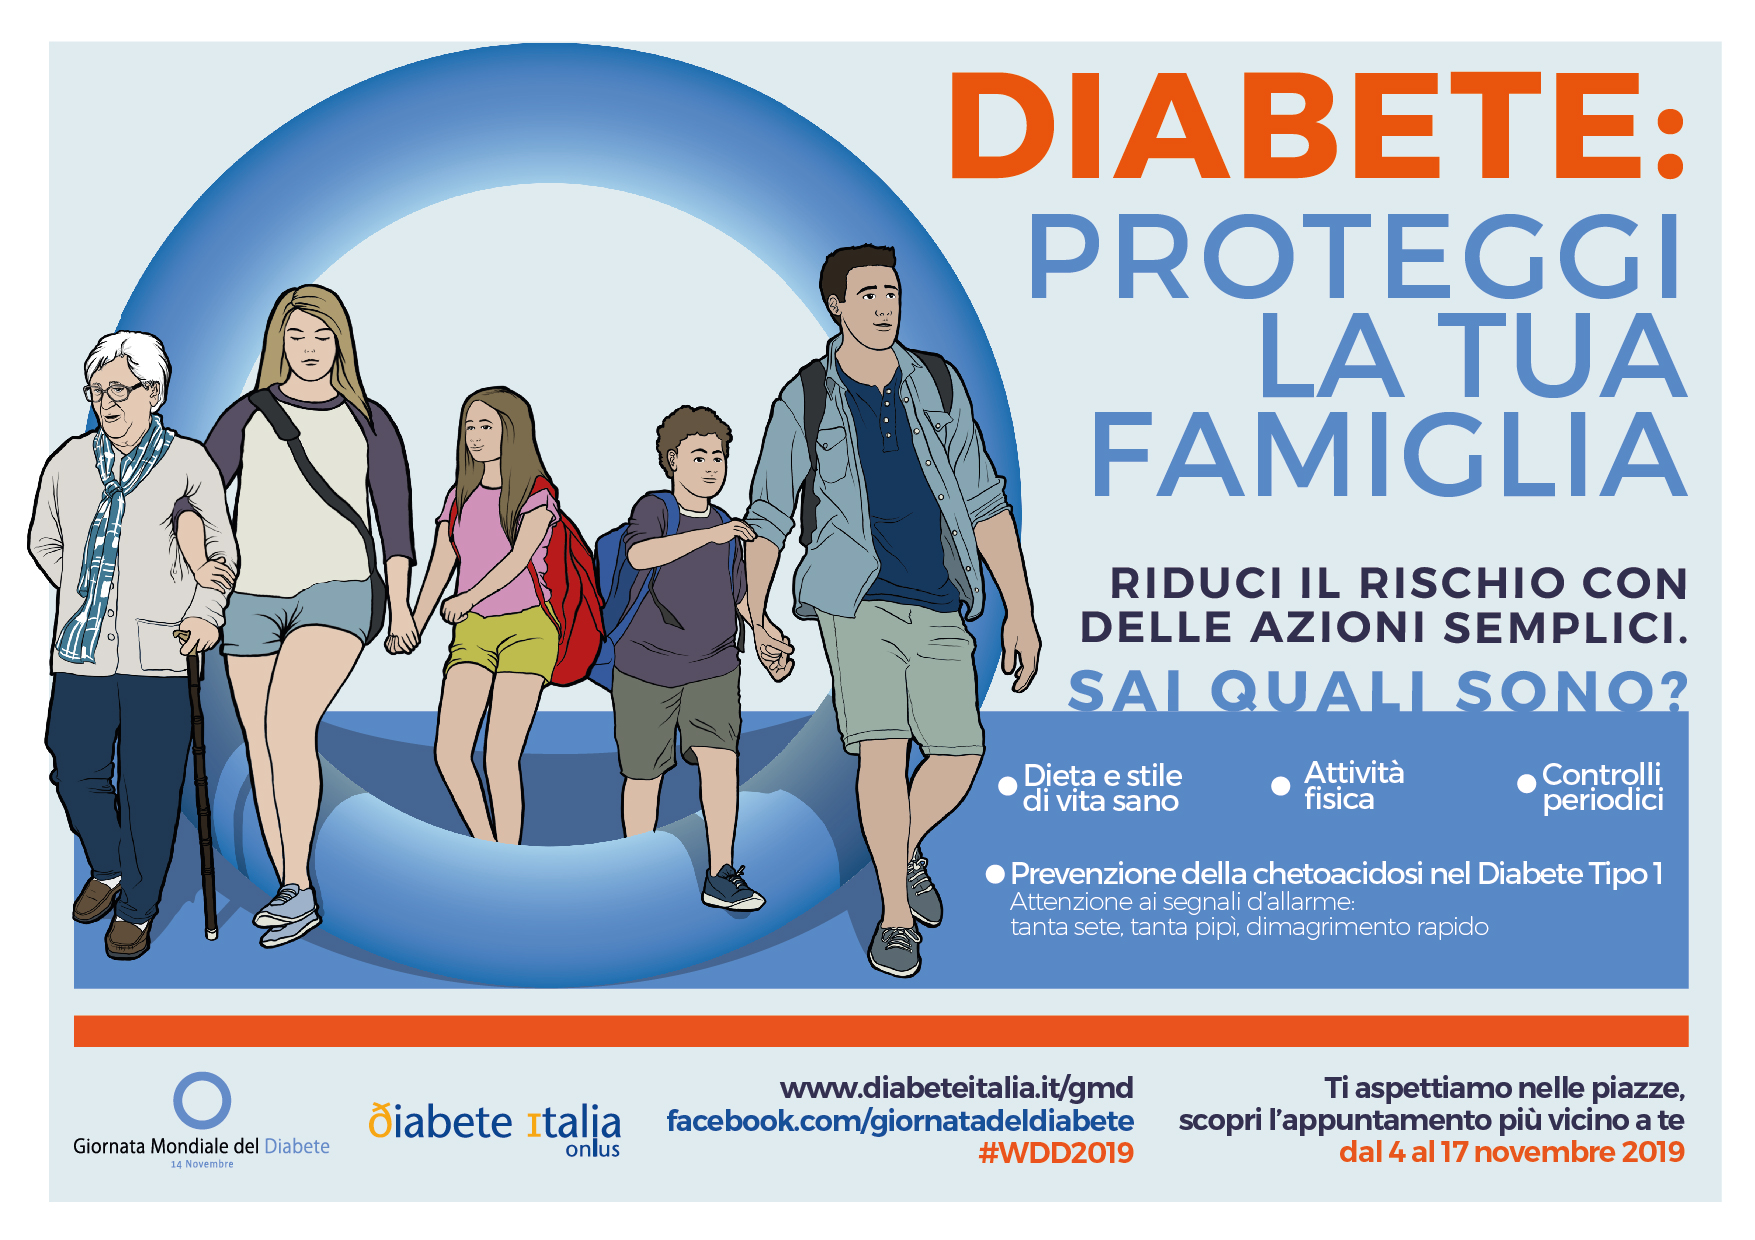 Giornata Mondiale del diabete